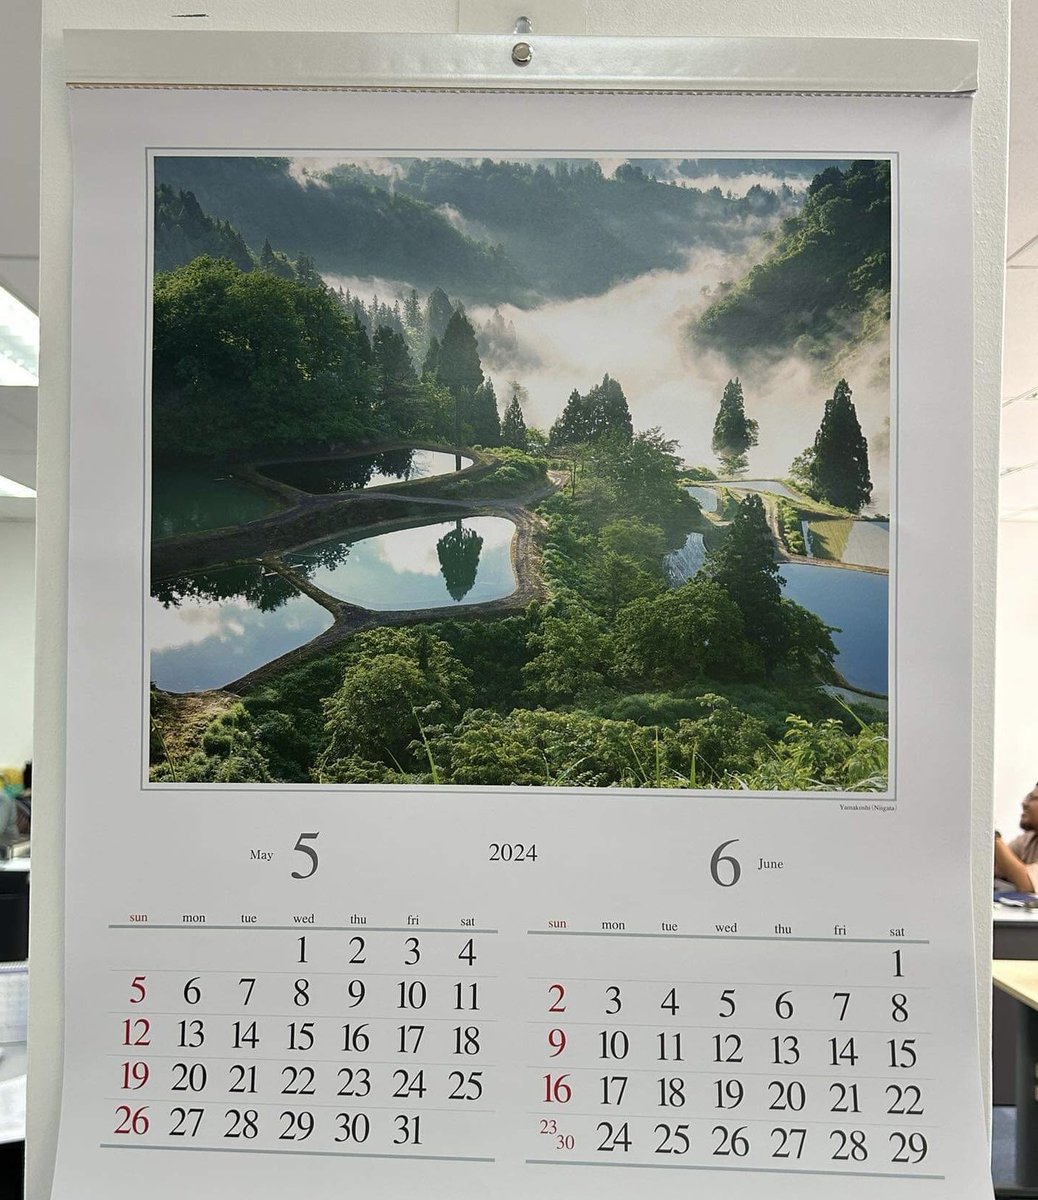 マレーシアで働いでいる友人から「オフィスのカレンダーを5月にめくったら山古志が出てきた」とSNSが。思わず嬉しくなったひと時｡